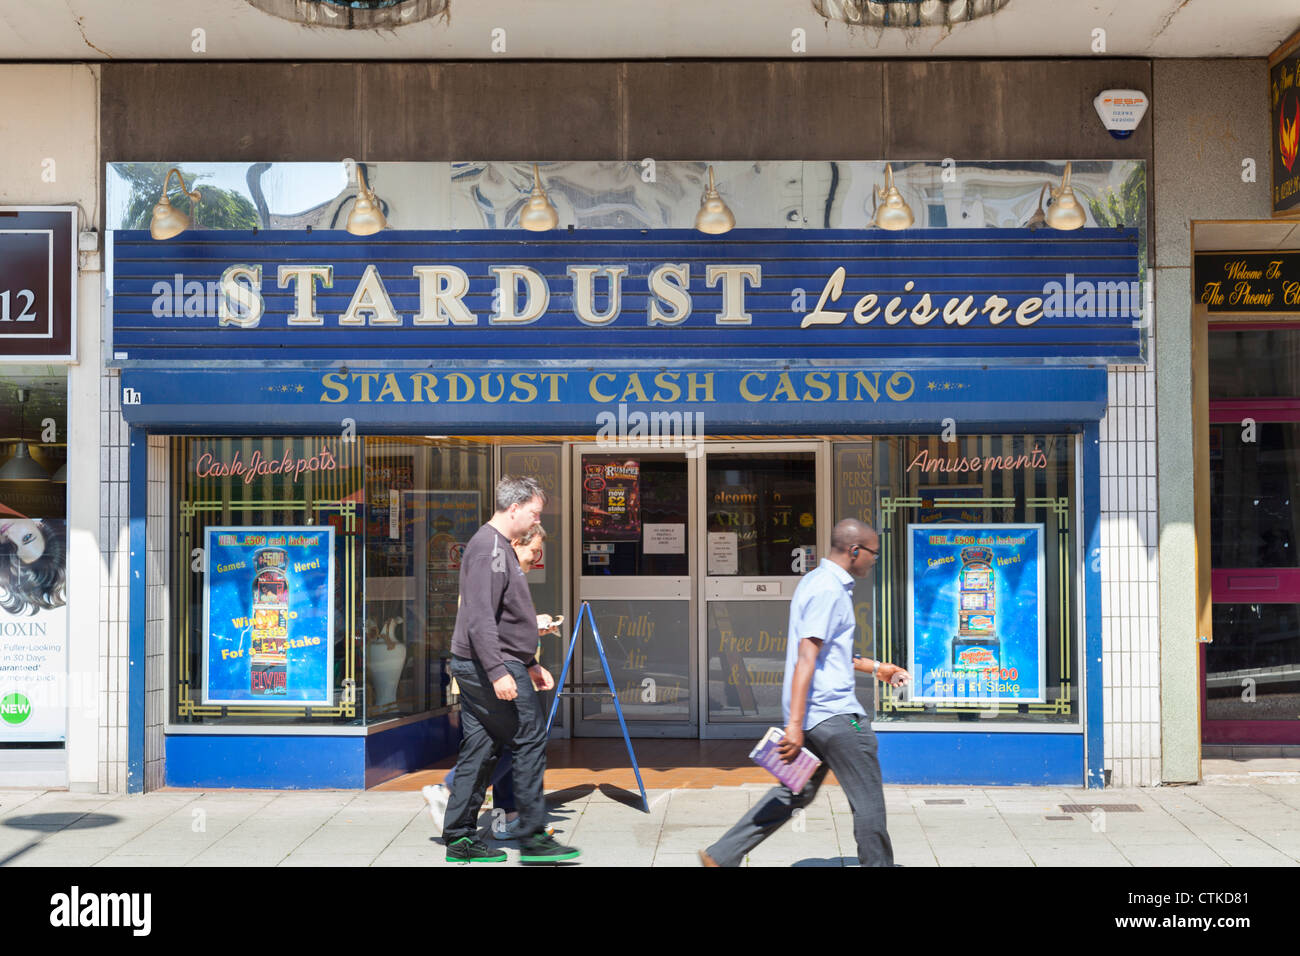 Stardust Freizeit Cash Casino High Street Ladenfront Stockfoto